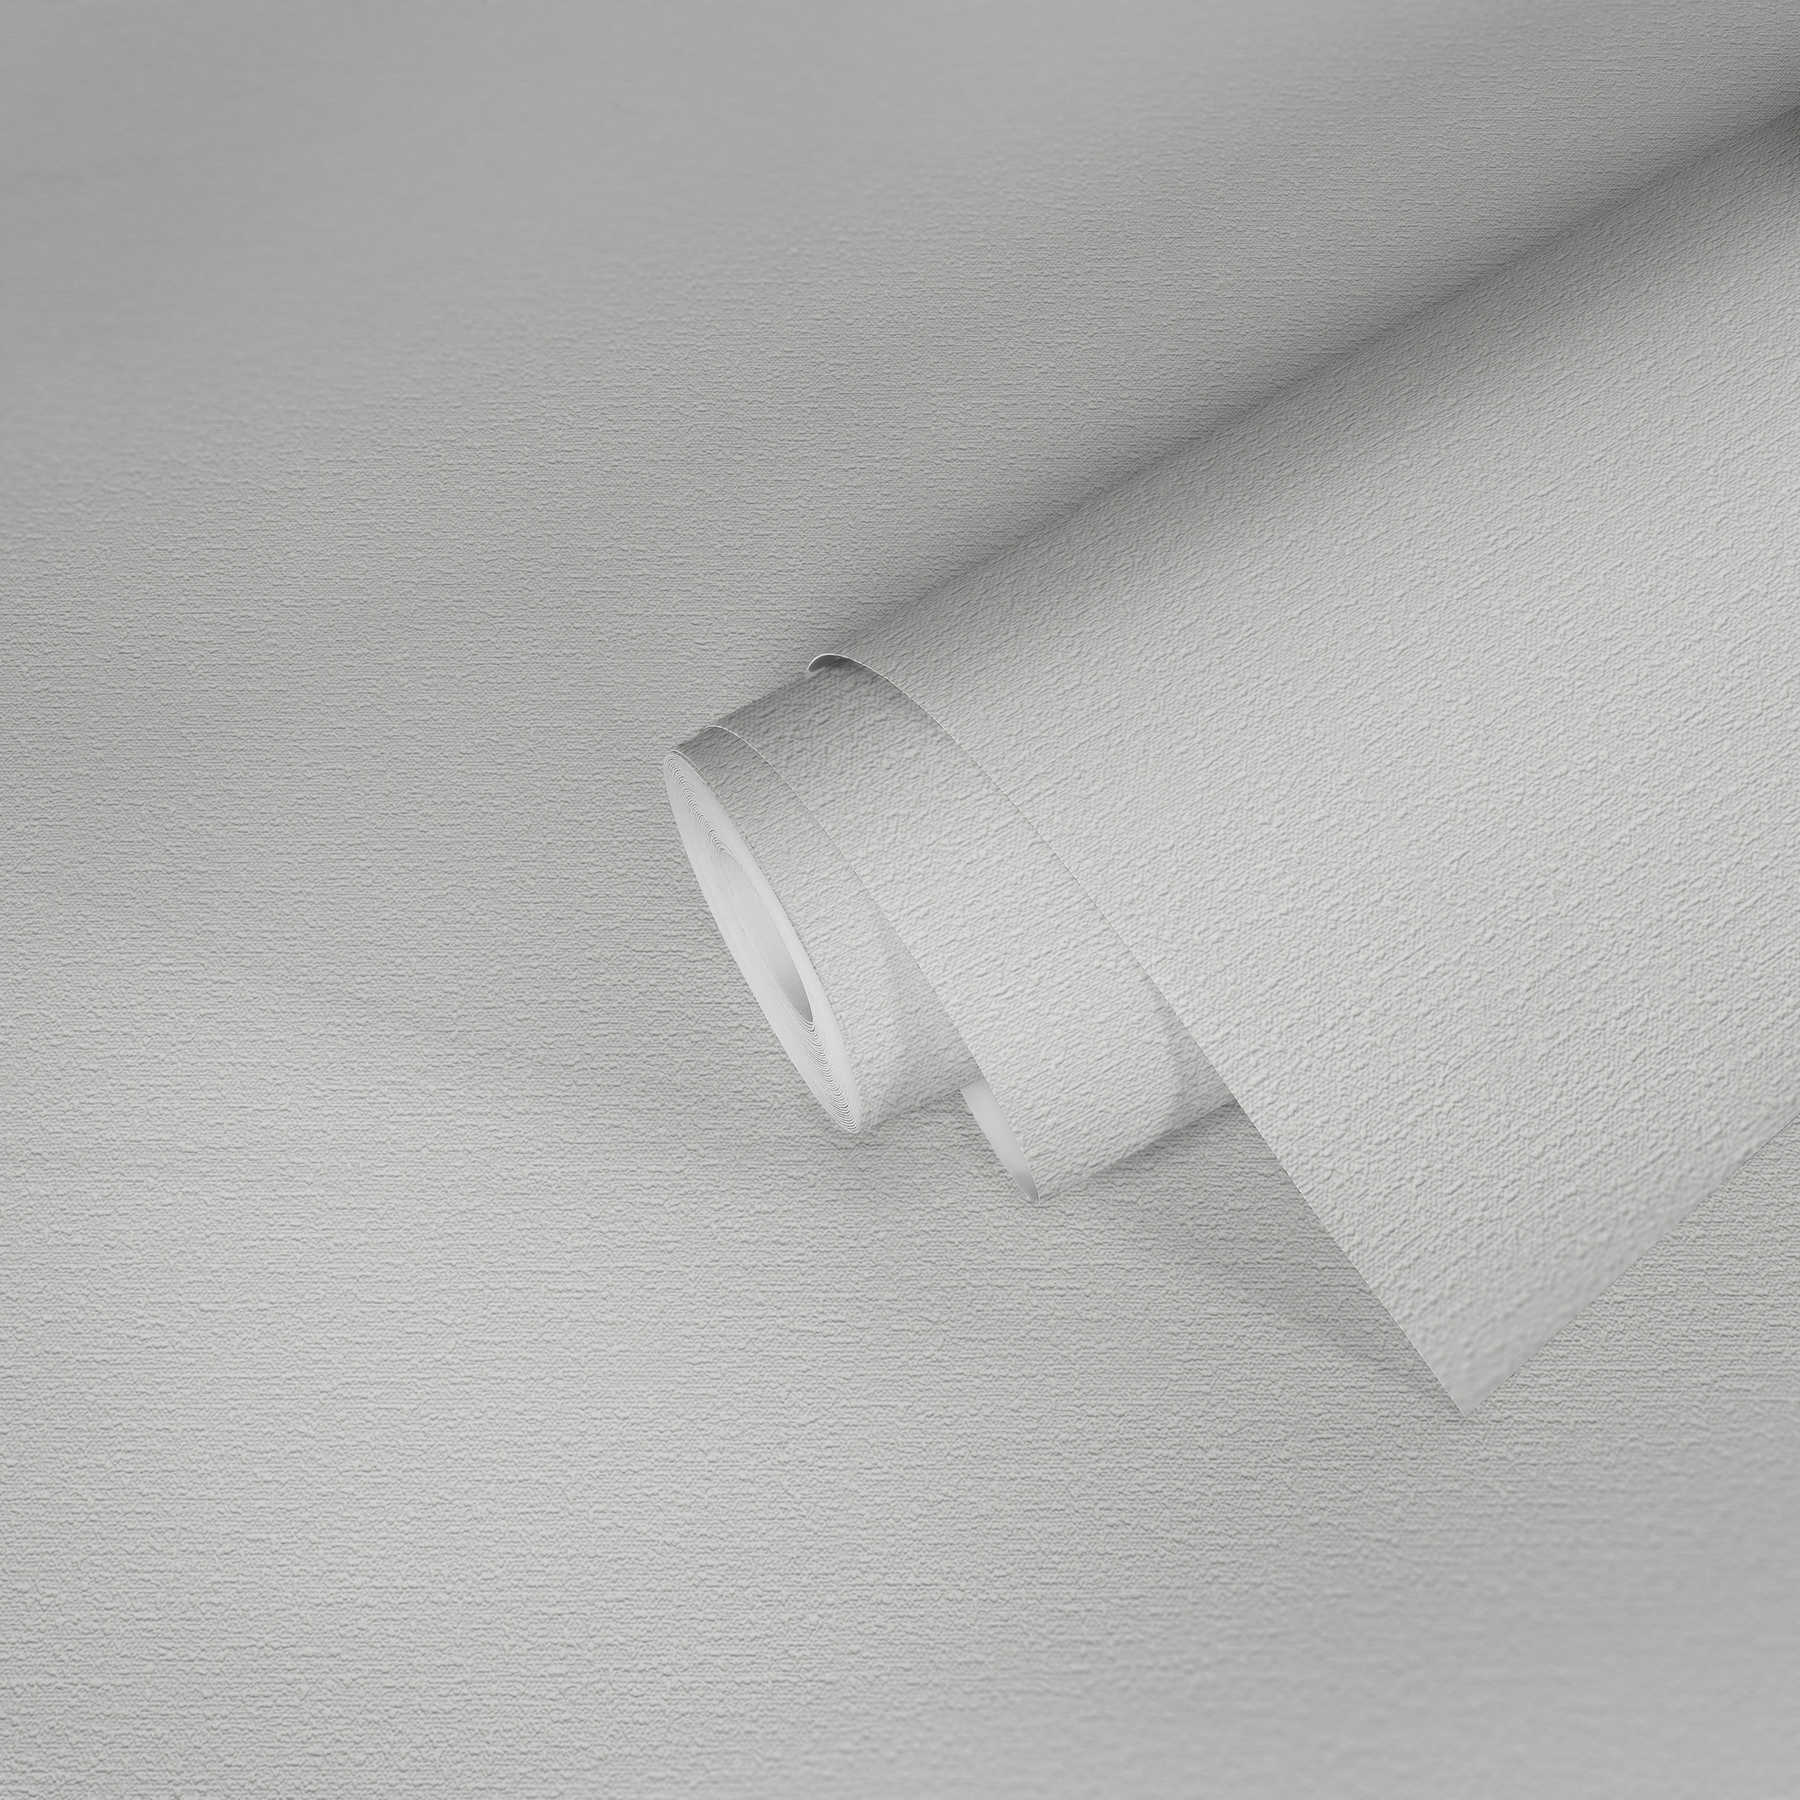             Papier peint blanc avec structure d'aspect textile
        